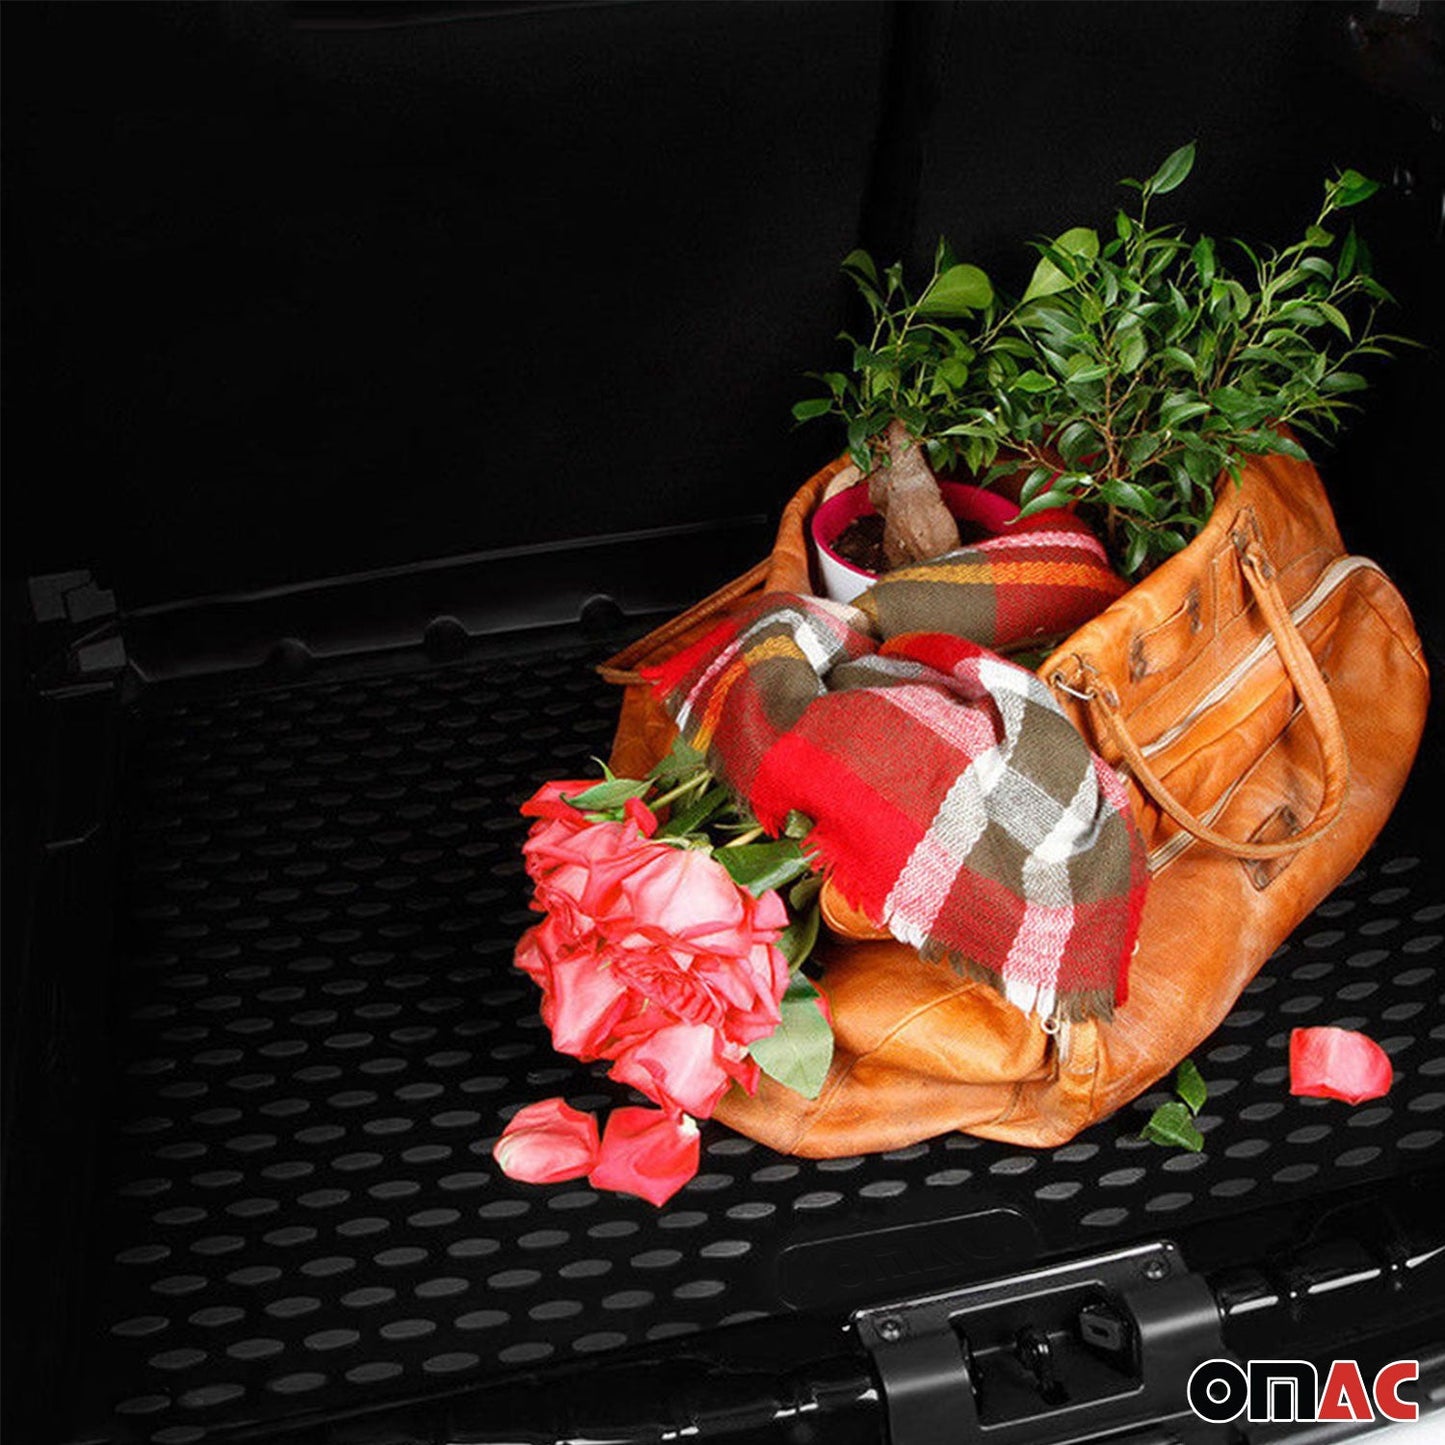 OMAC Cargo Mats Liner for Toyota Corolla 2020-2024 Sedan Rear Trunk Waterproof U022065